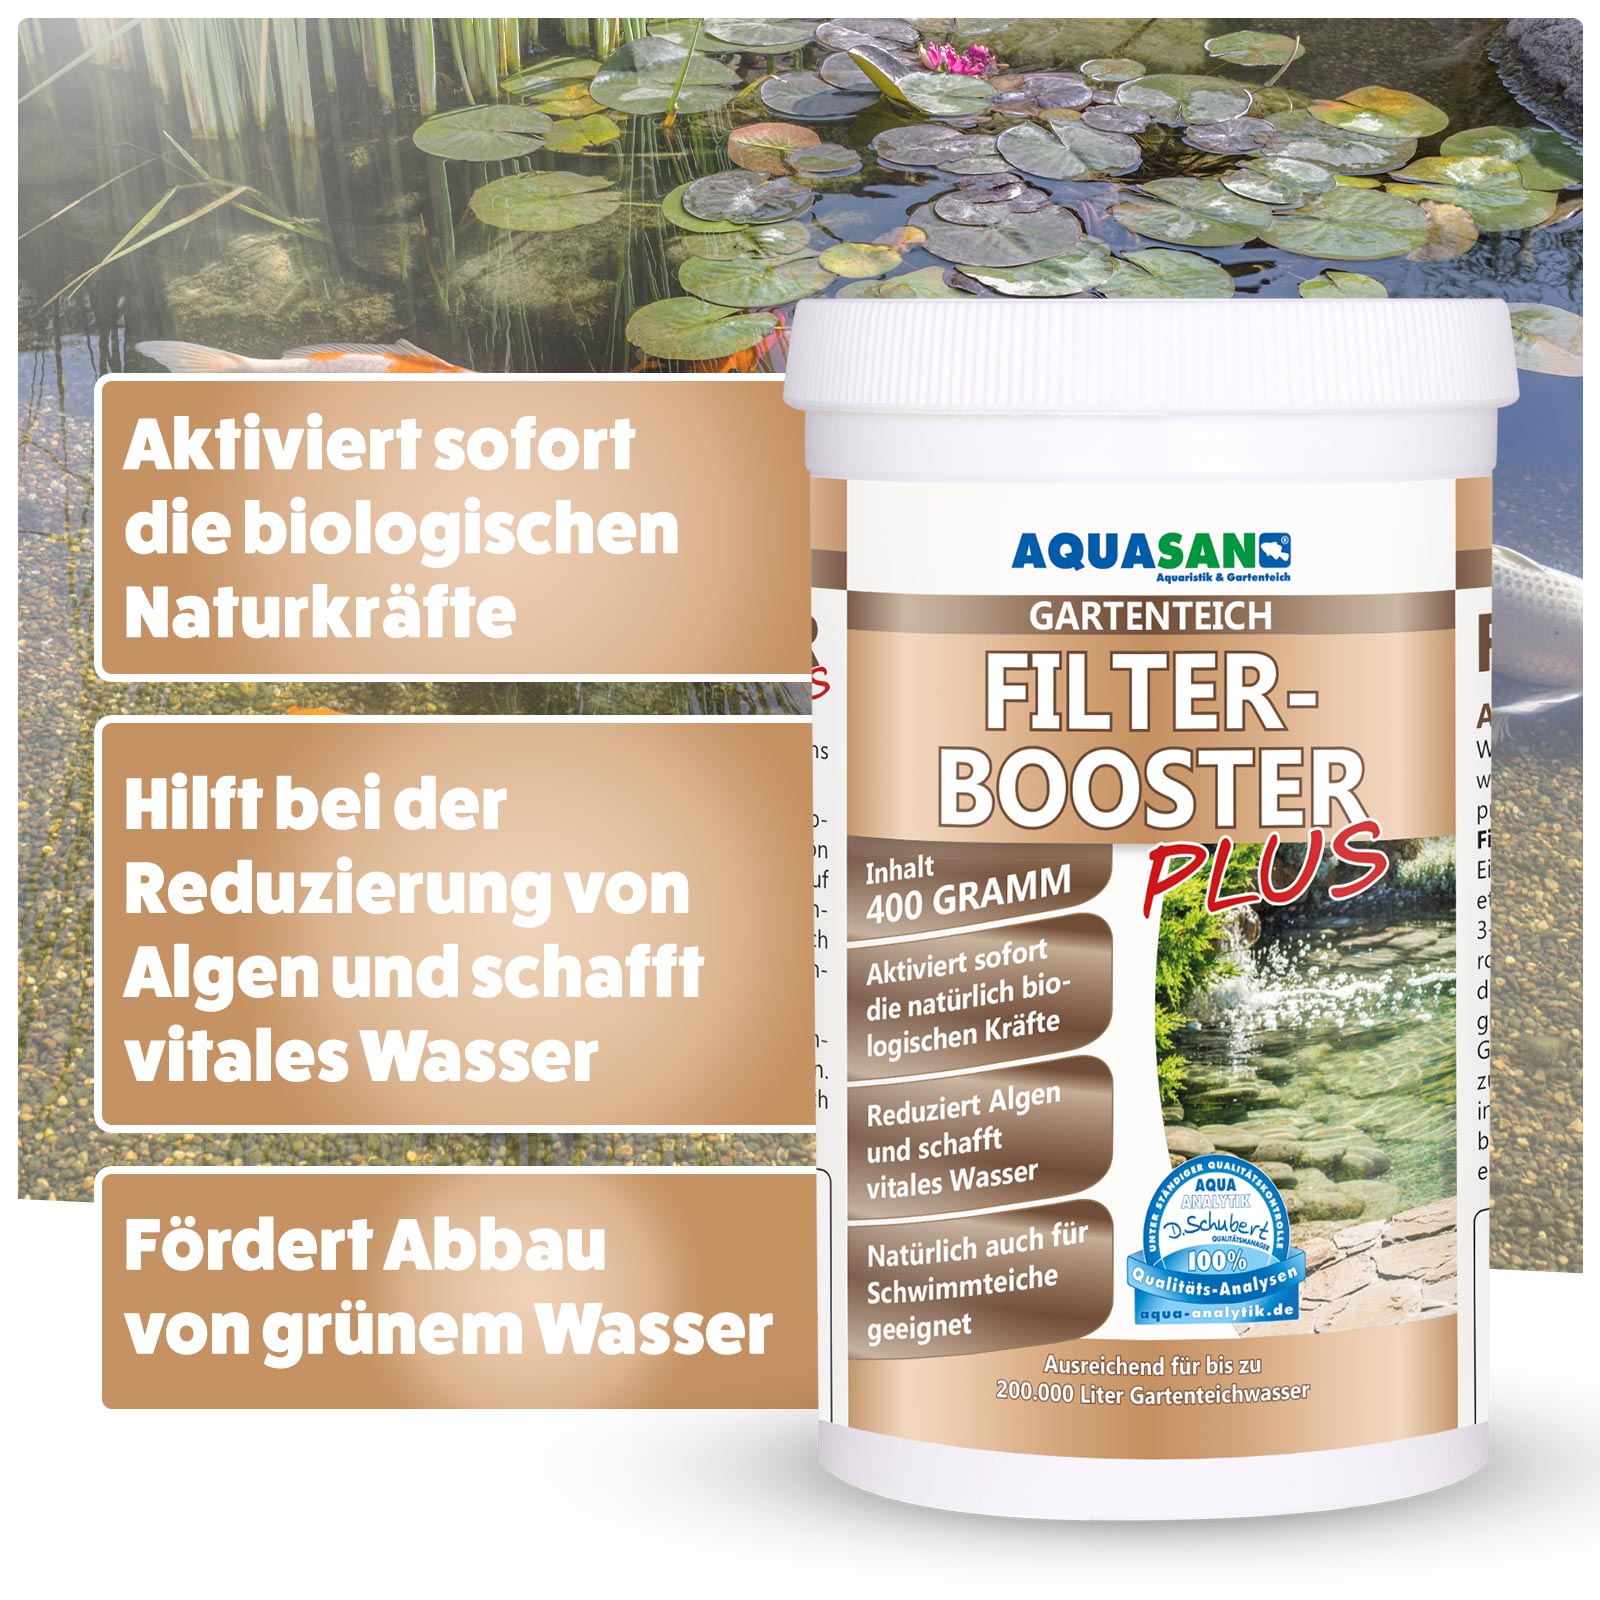 AQUASAN FilterBooster PLUS für Gartenteiche